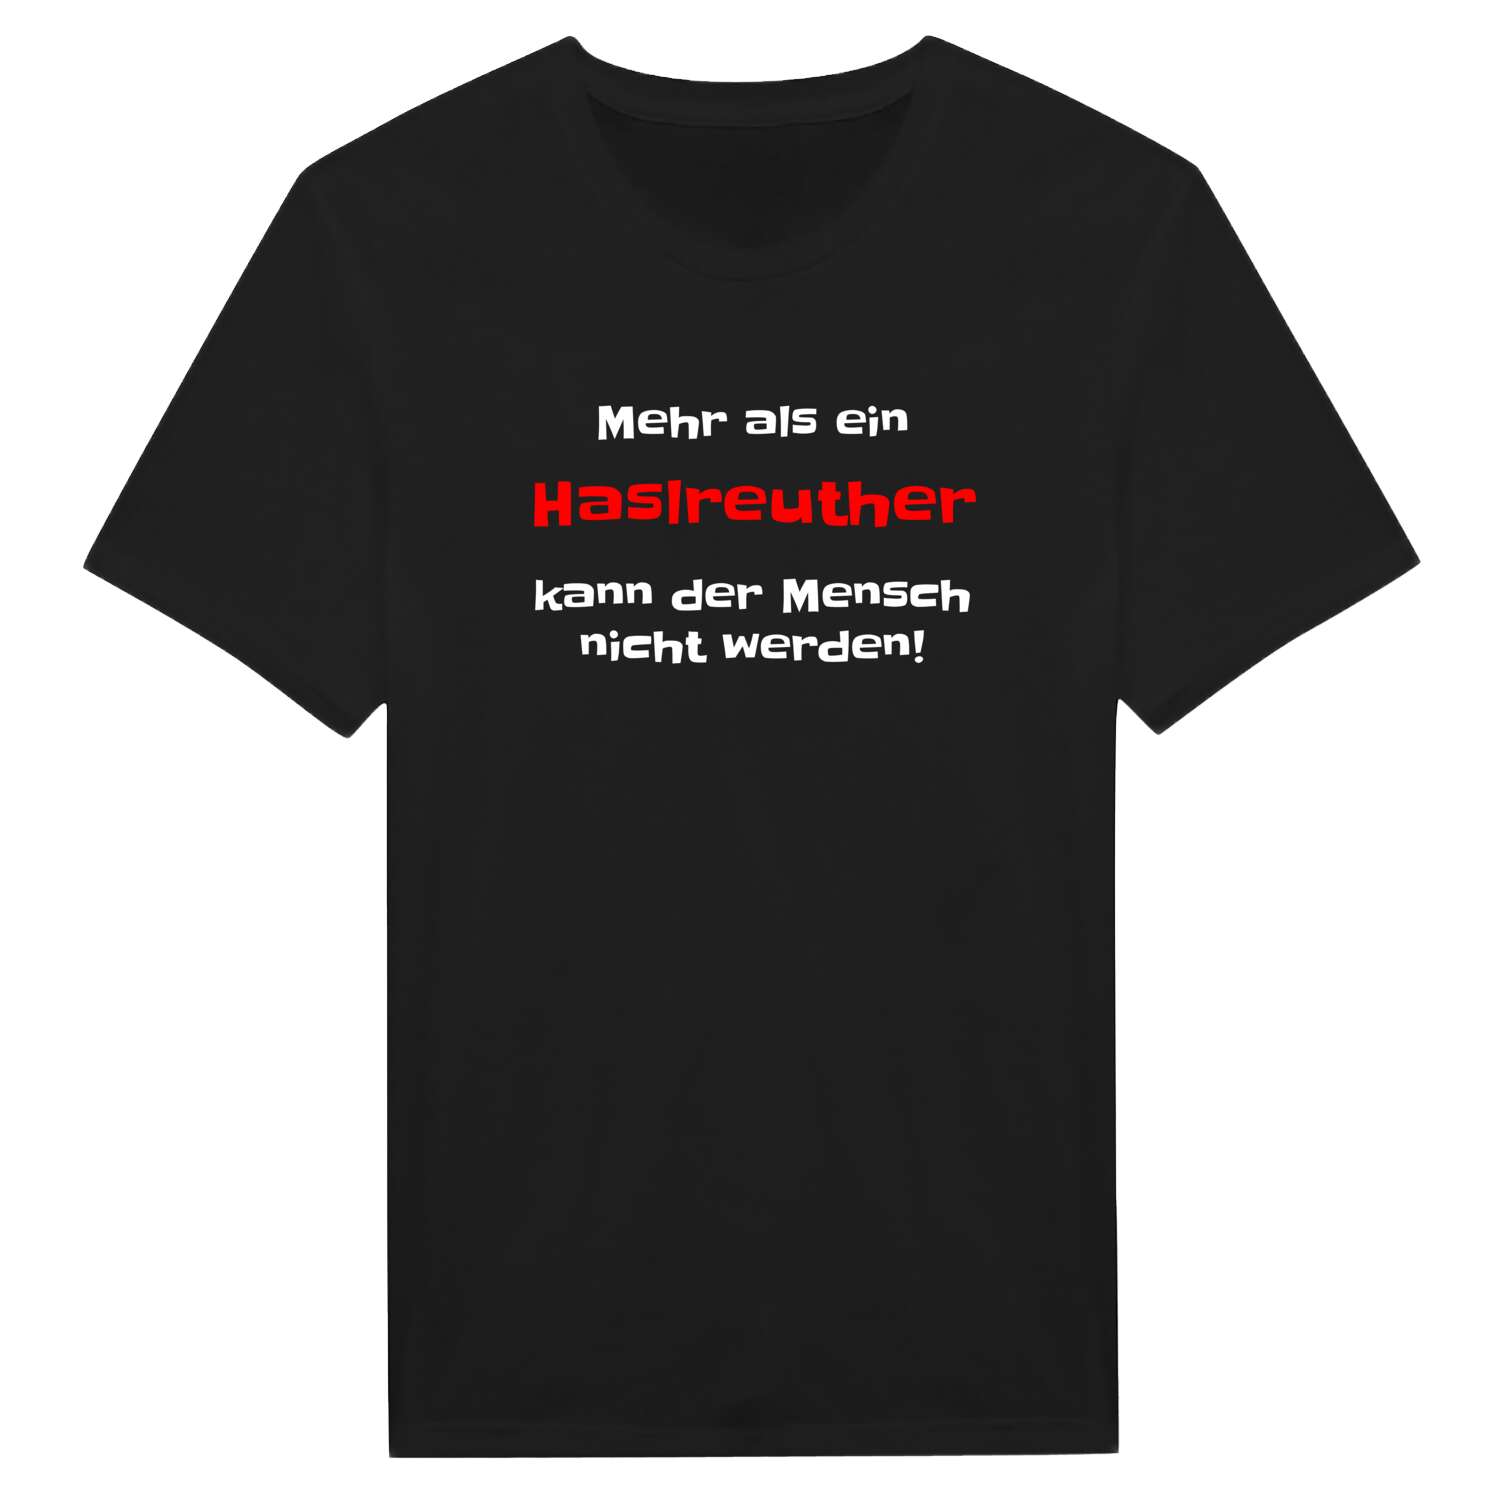 Haslreuth T-Shirt »Mehr als ein«